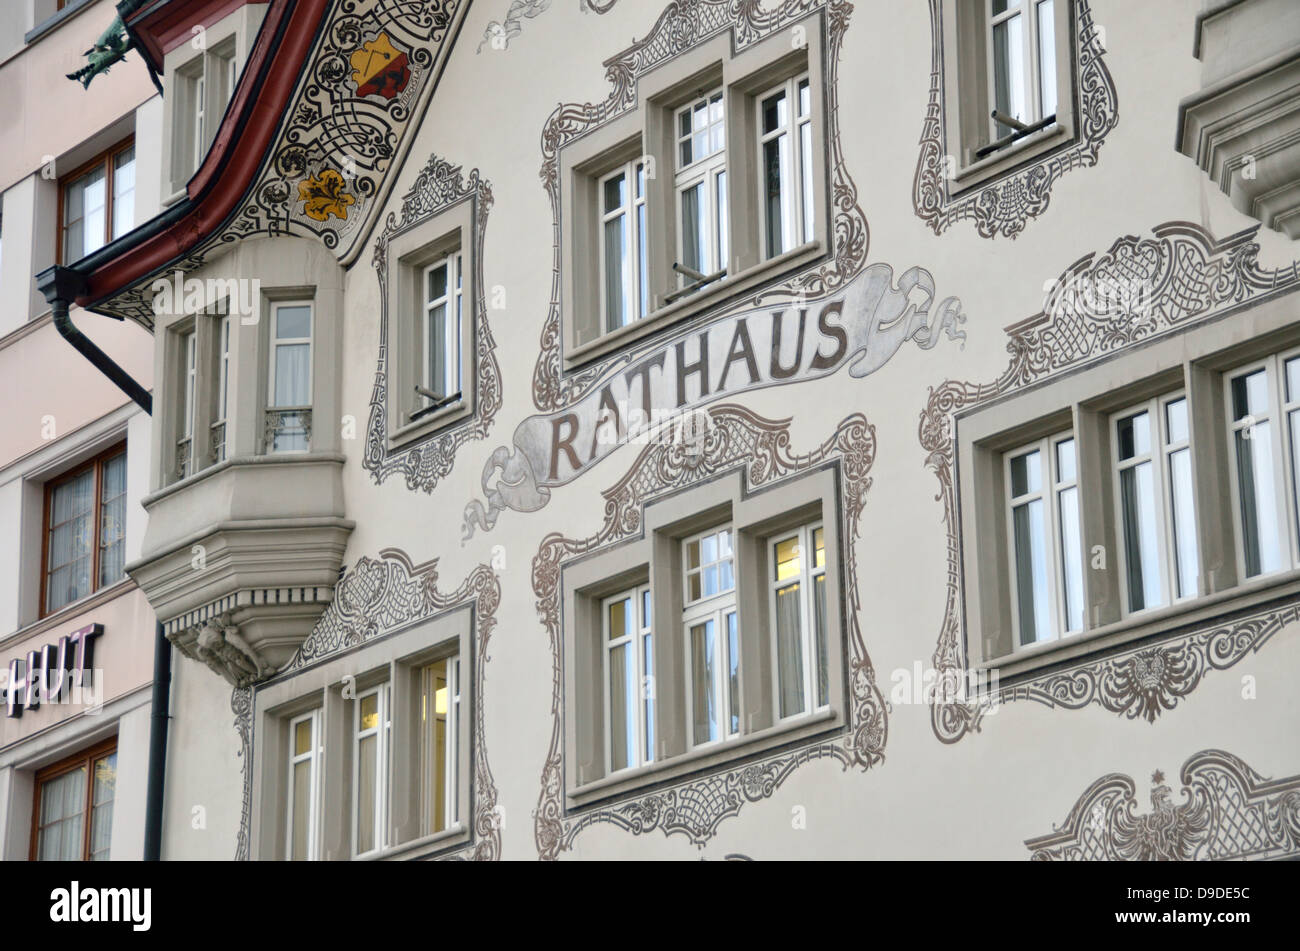 Rathaus (town hall), Einsiedeln, Schwyz, Switzerland. Stock Photo